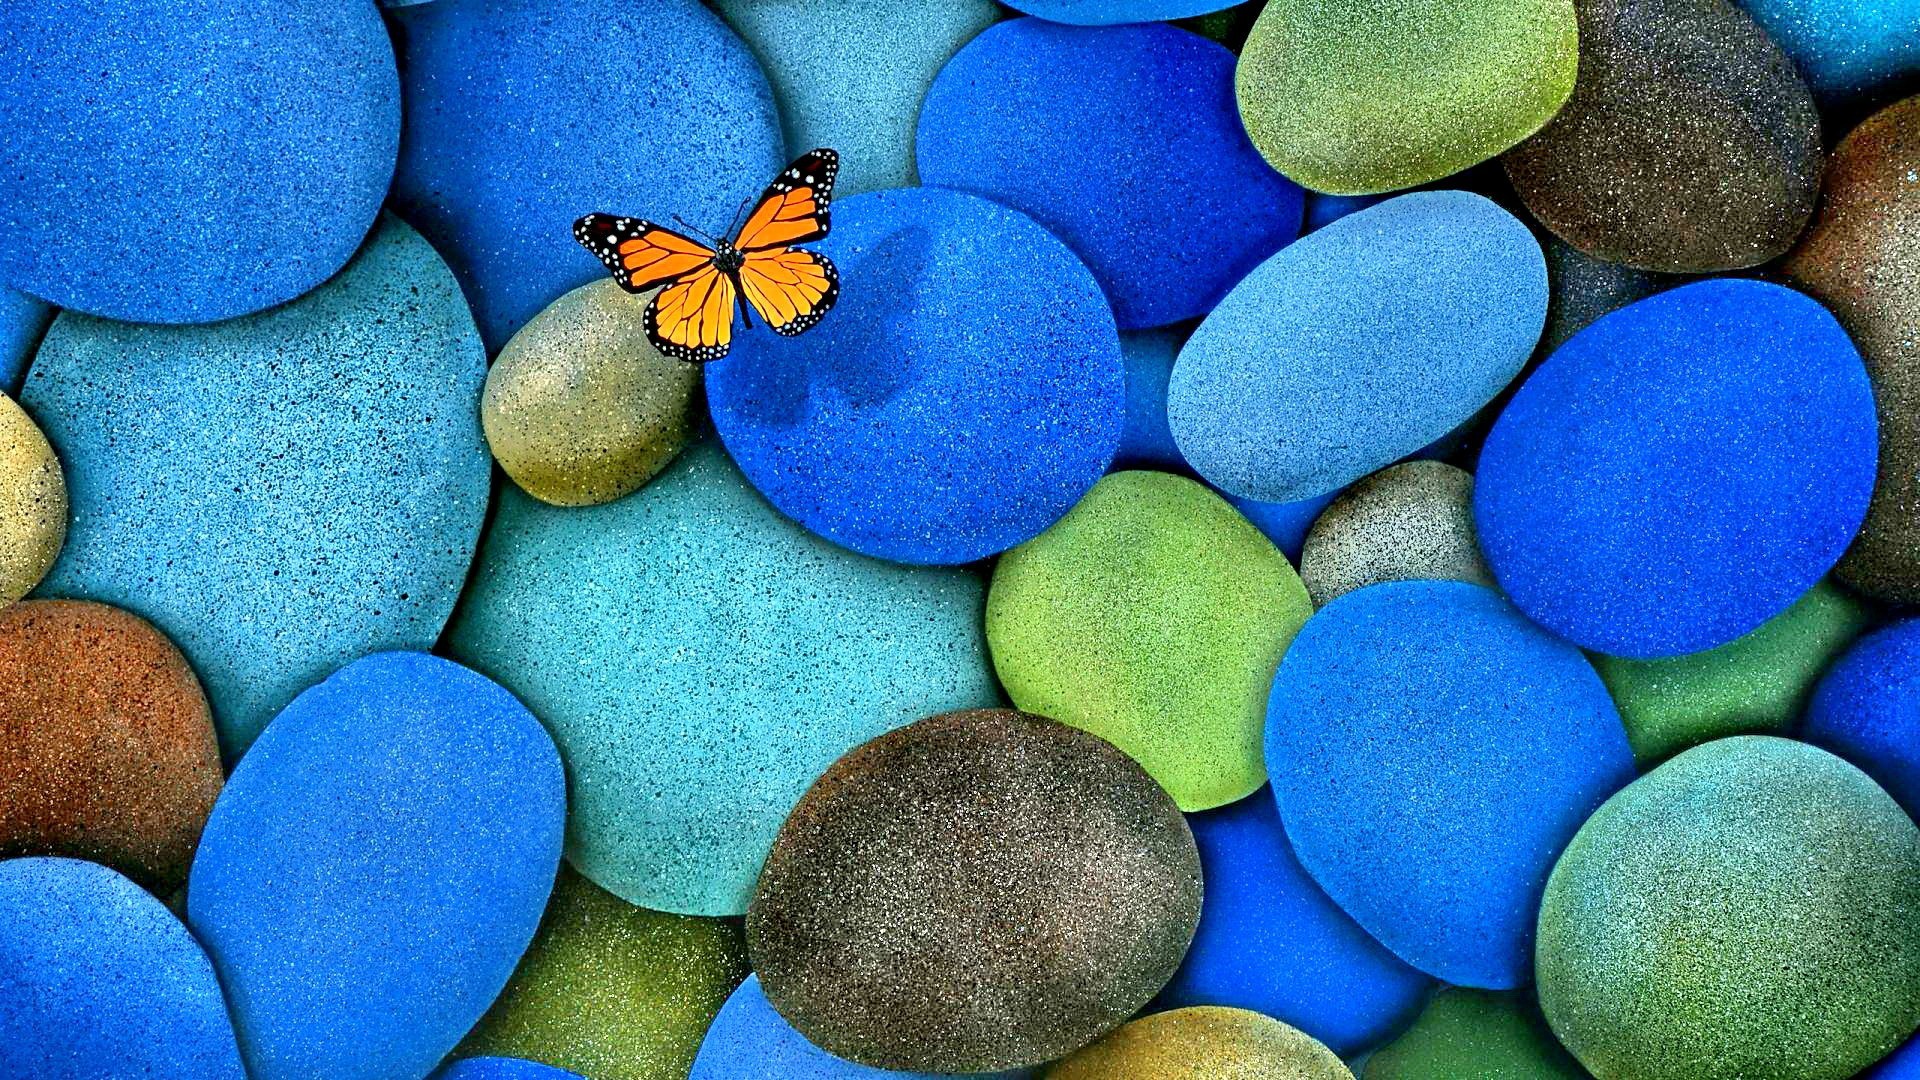 Butterfly Blue Beautiful Pretty Nature Splendo Things - Butterfly On Blue Rocks - HD Wallpaper 